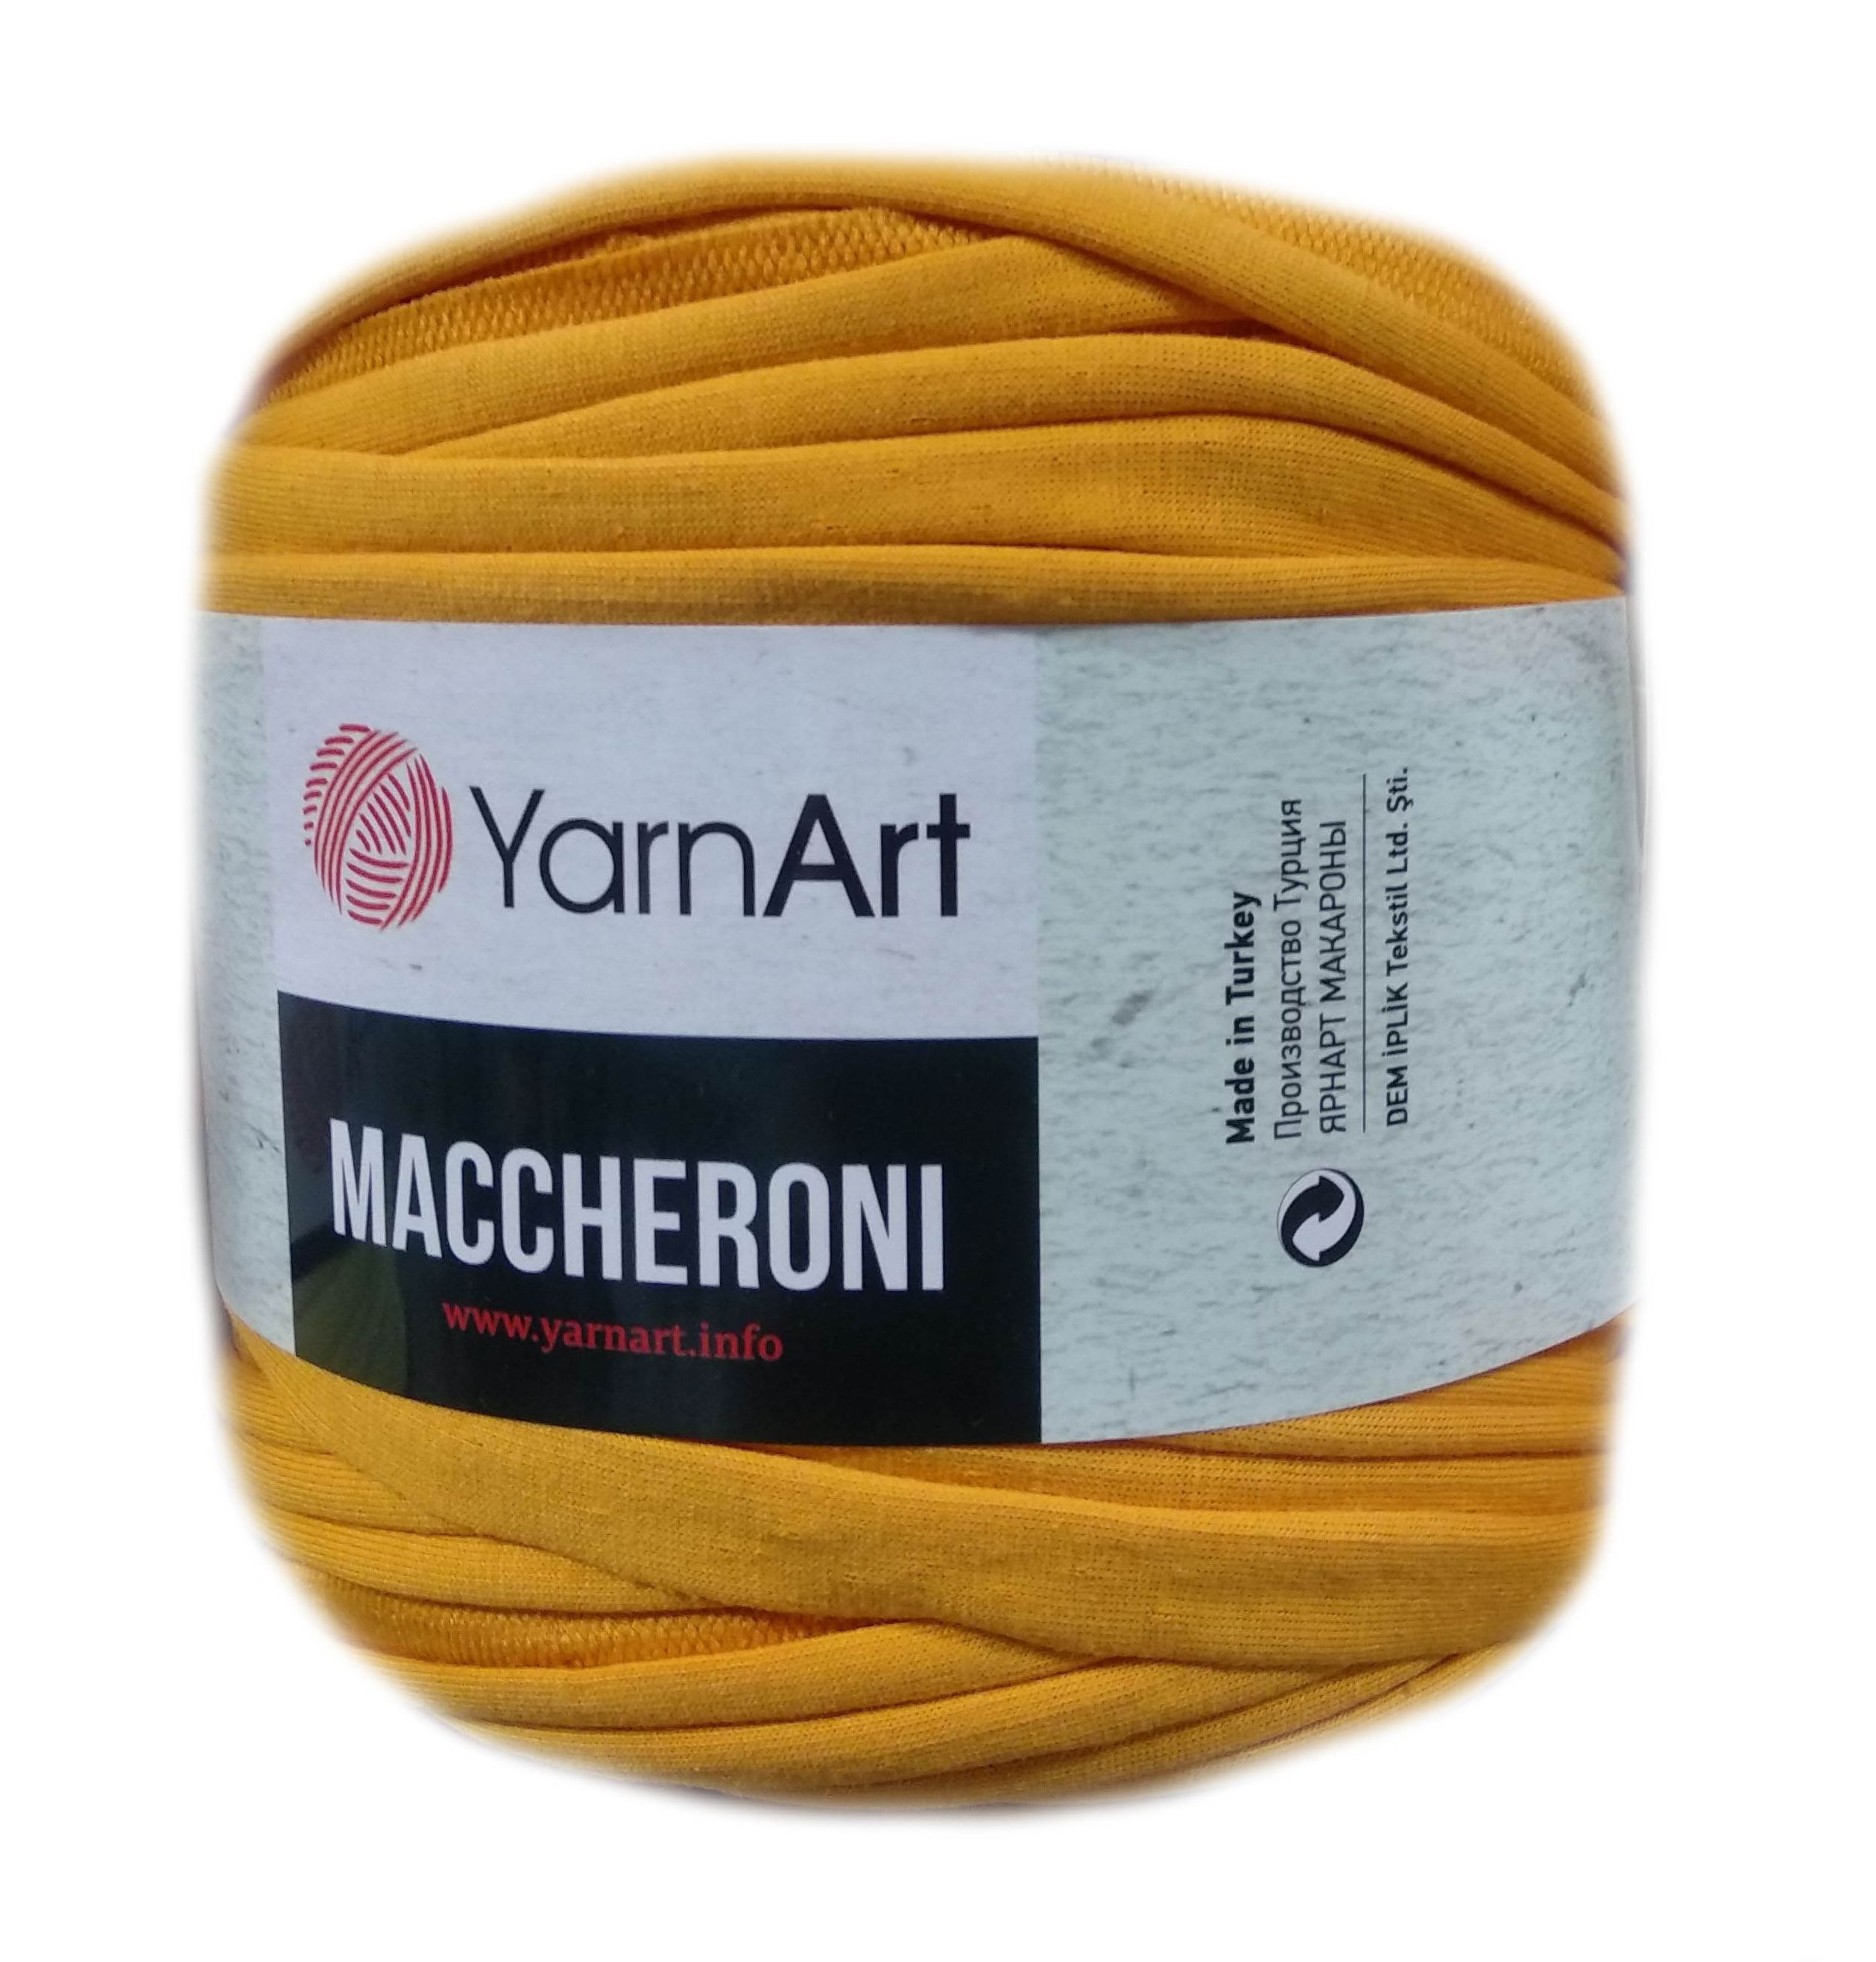 YarnArt MACCHERONI, napsárga póló fonal.Tű 12-15 mm.